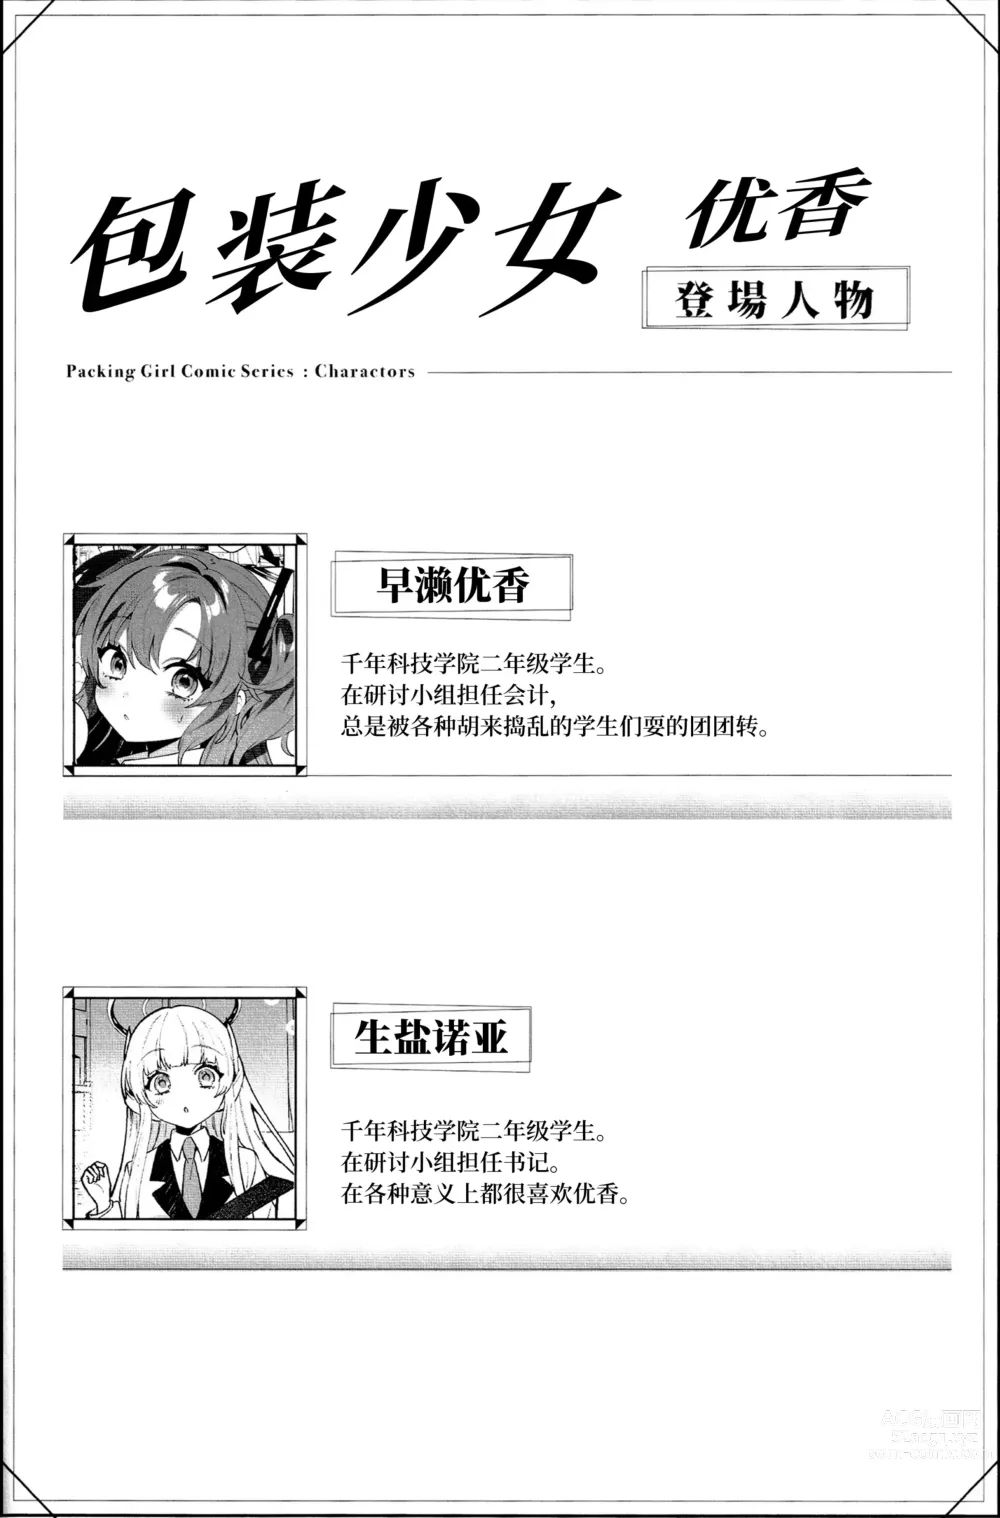 Page 2 of doujinshi Konpou Shoujo Yuuka - Packaging Girl Series - Yuuka